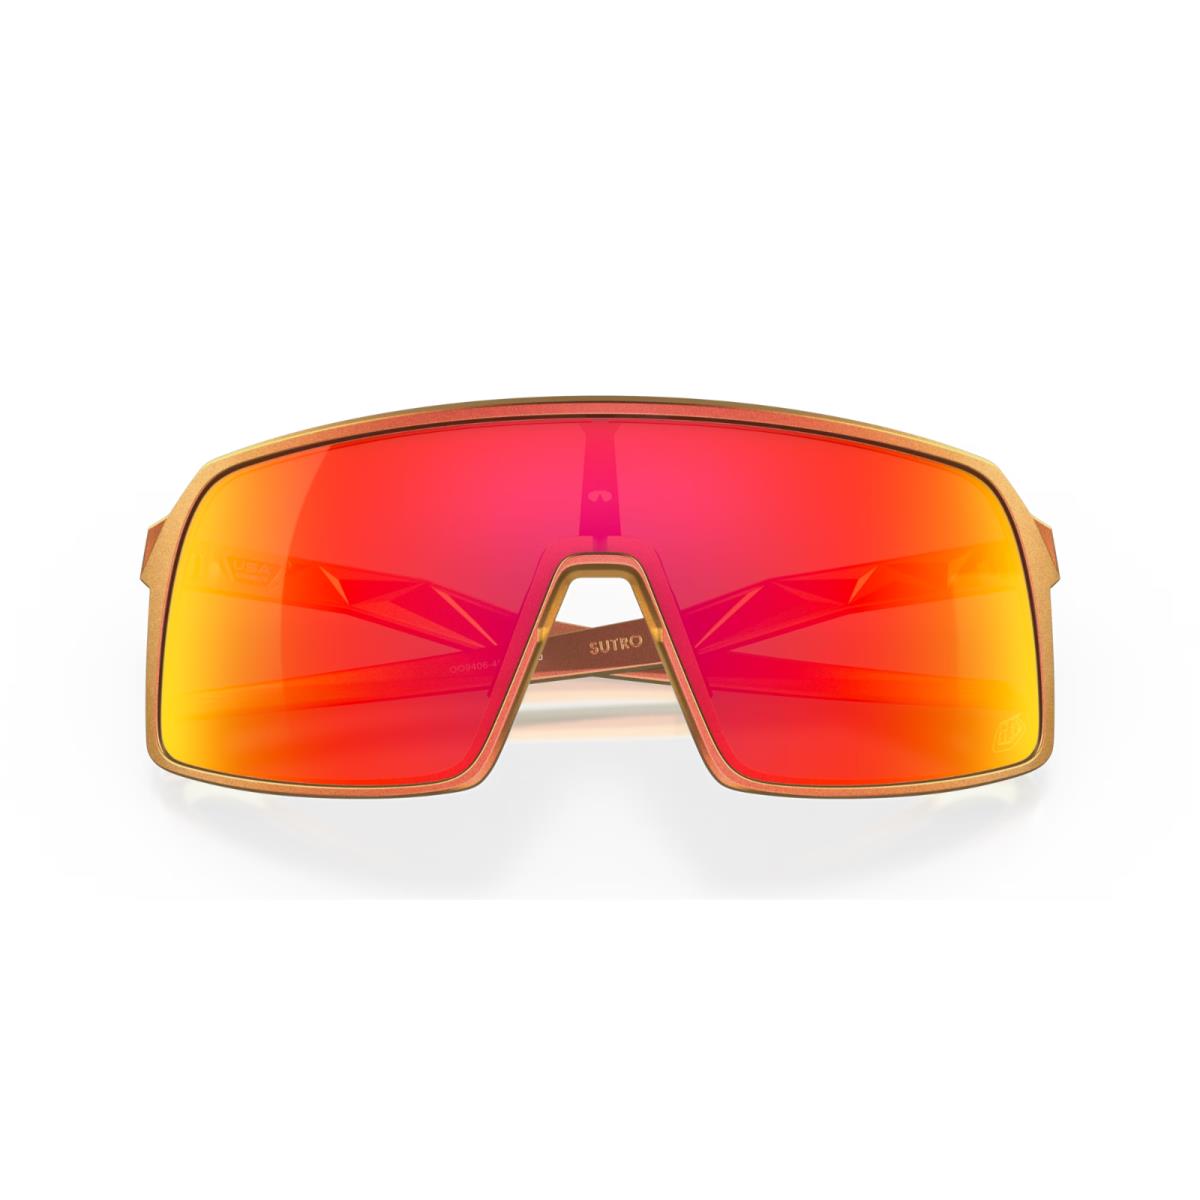 Oakley sunglasses  - Frame: Red Gold Shift, Lens: 4